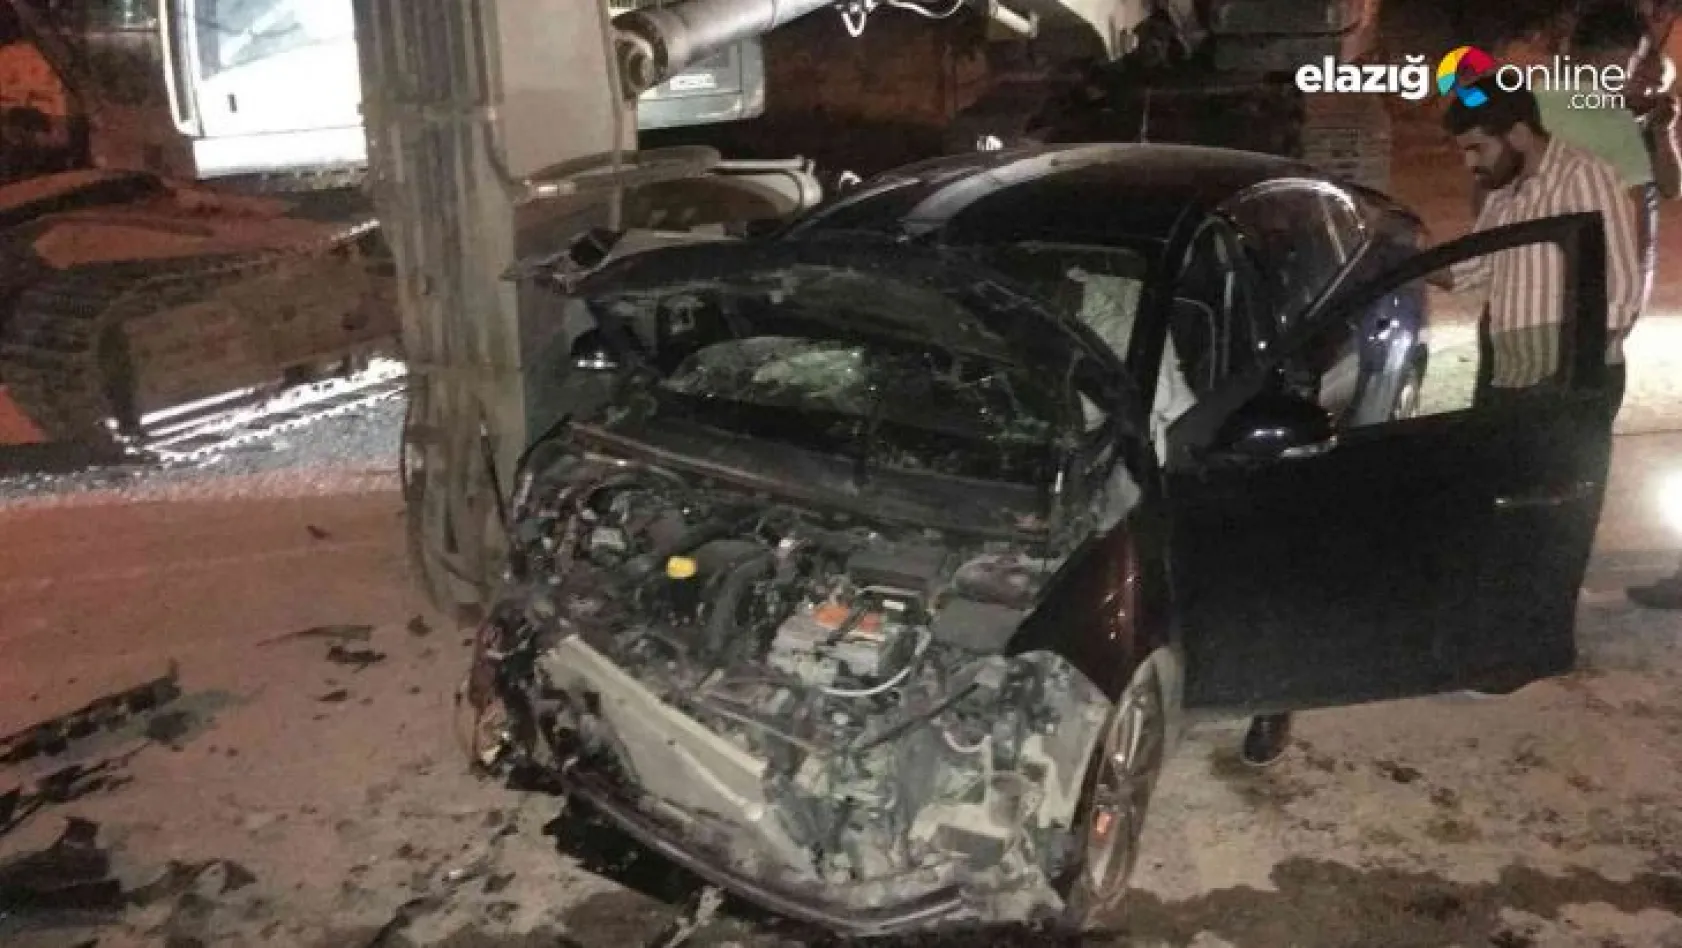 Elazığ'da ekskavatöre çarpan otomobil hurdaya döndü: 2'si ağır 3 yaralı